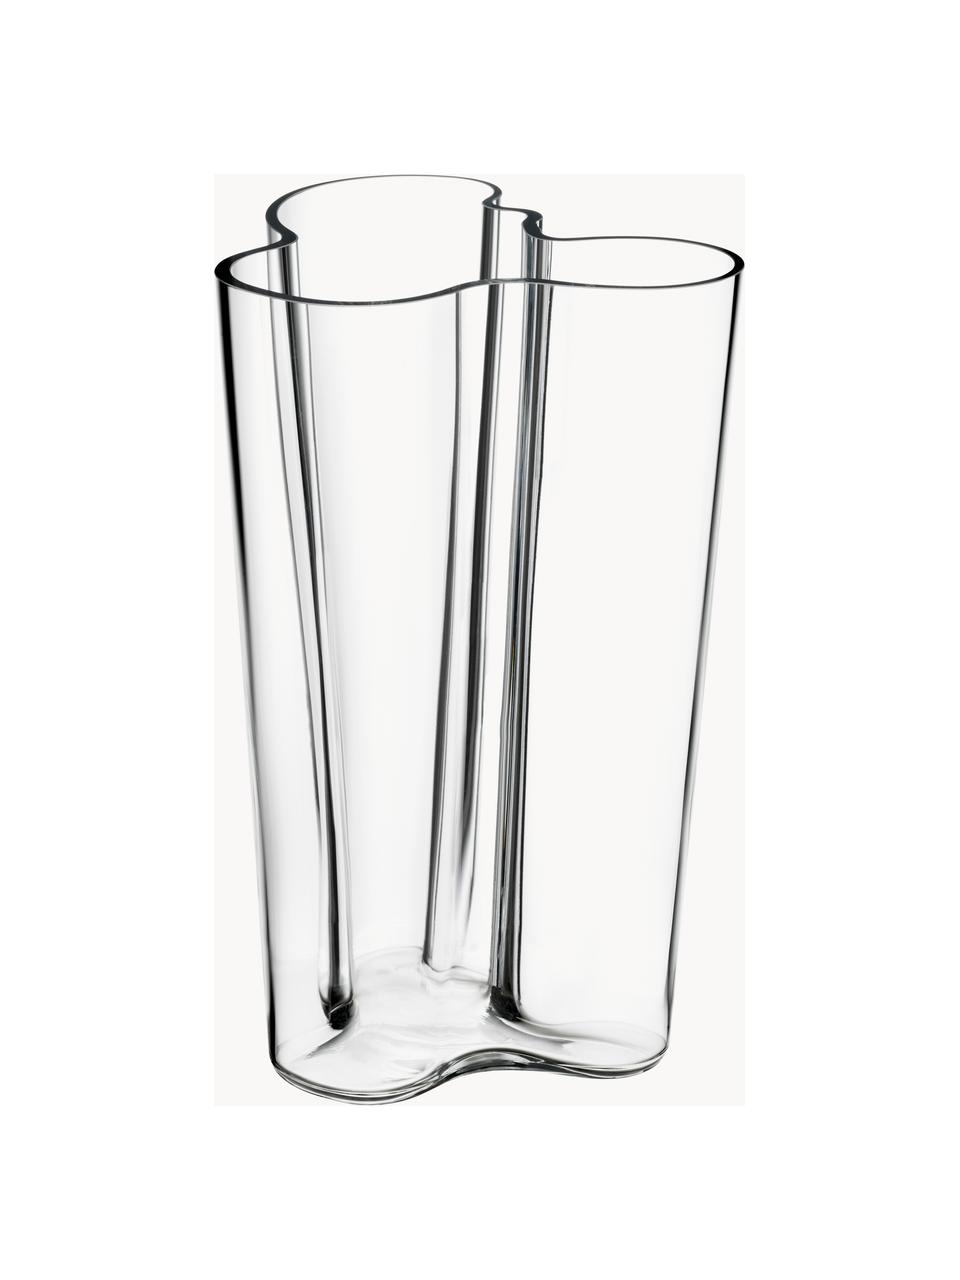 Foukaná váza Alvar Aalto, V 25 cm, Foukané sklo, Transparentní, Š 17 cm, V 25 cm